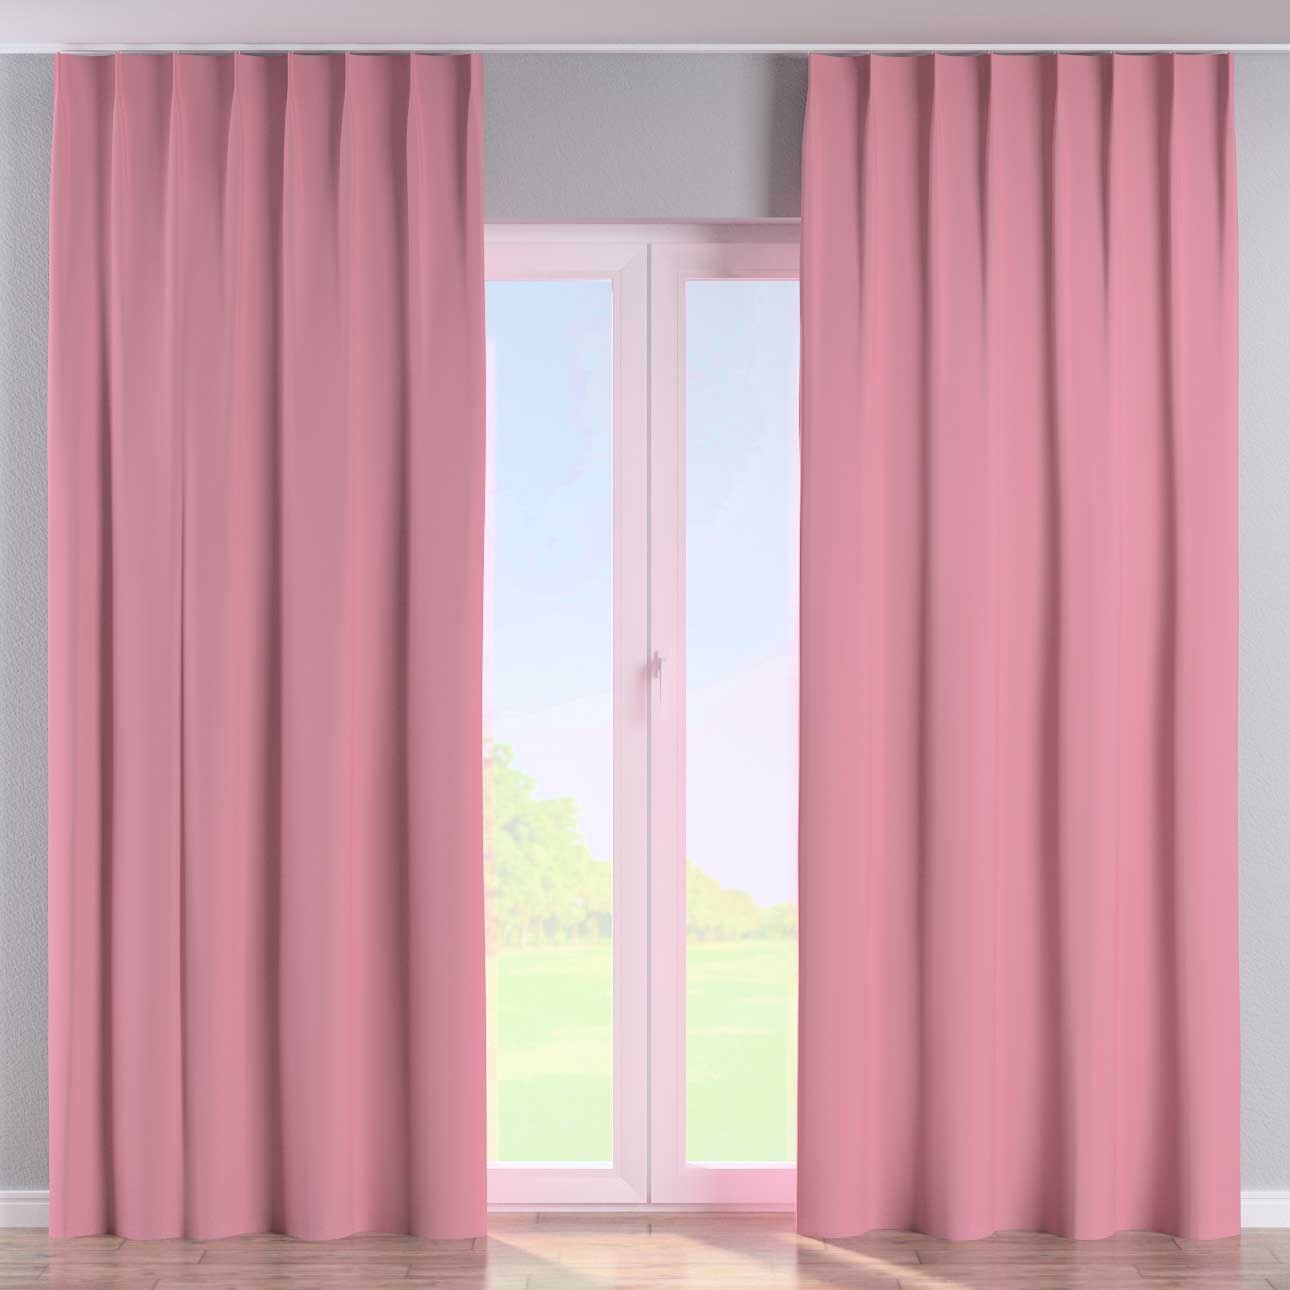 Vorhang mit flämischen 1-er Falten, rosa, Blackout (verdunkelnd) (269-92) günstig online kaufen